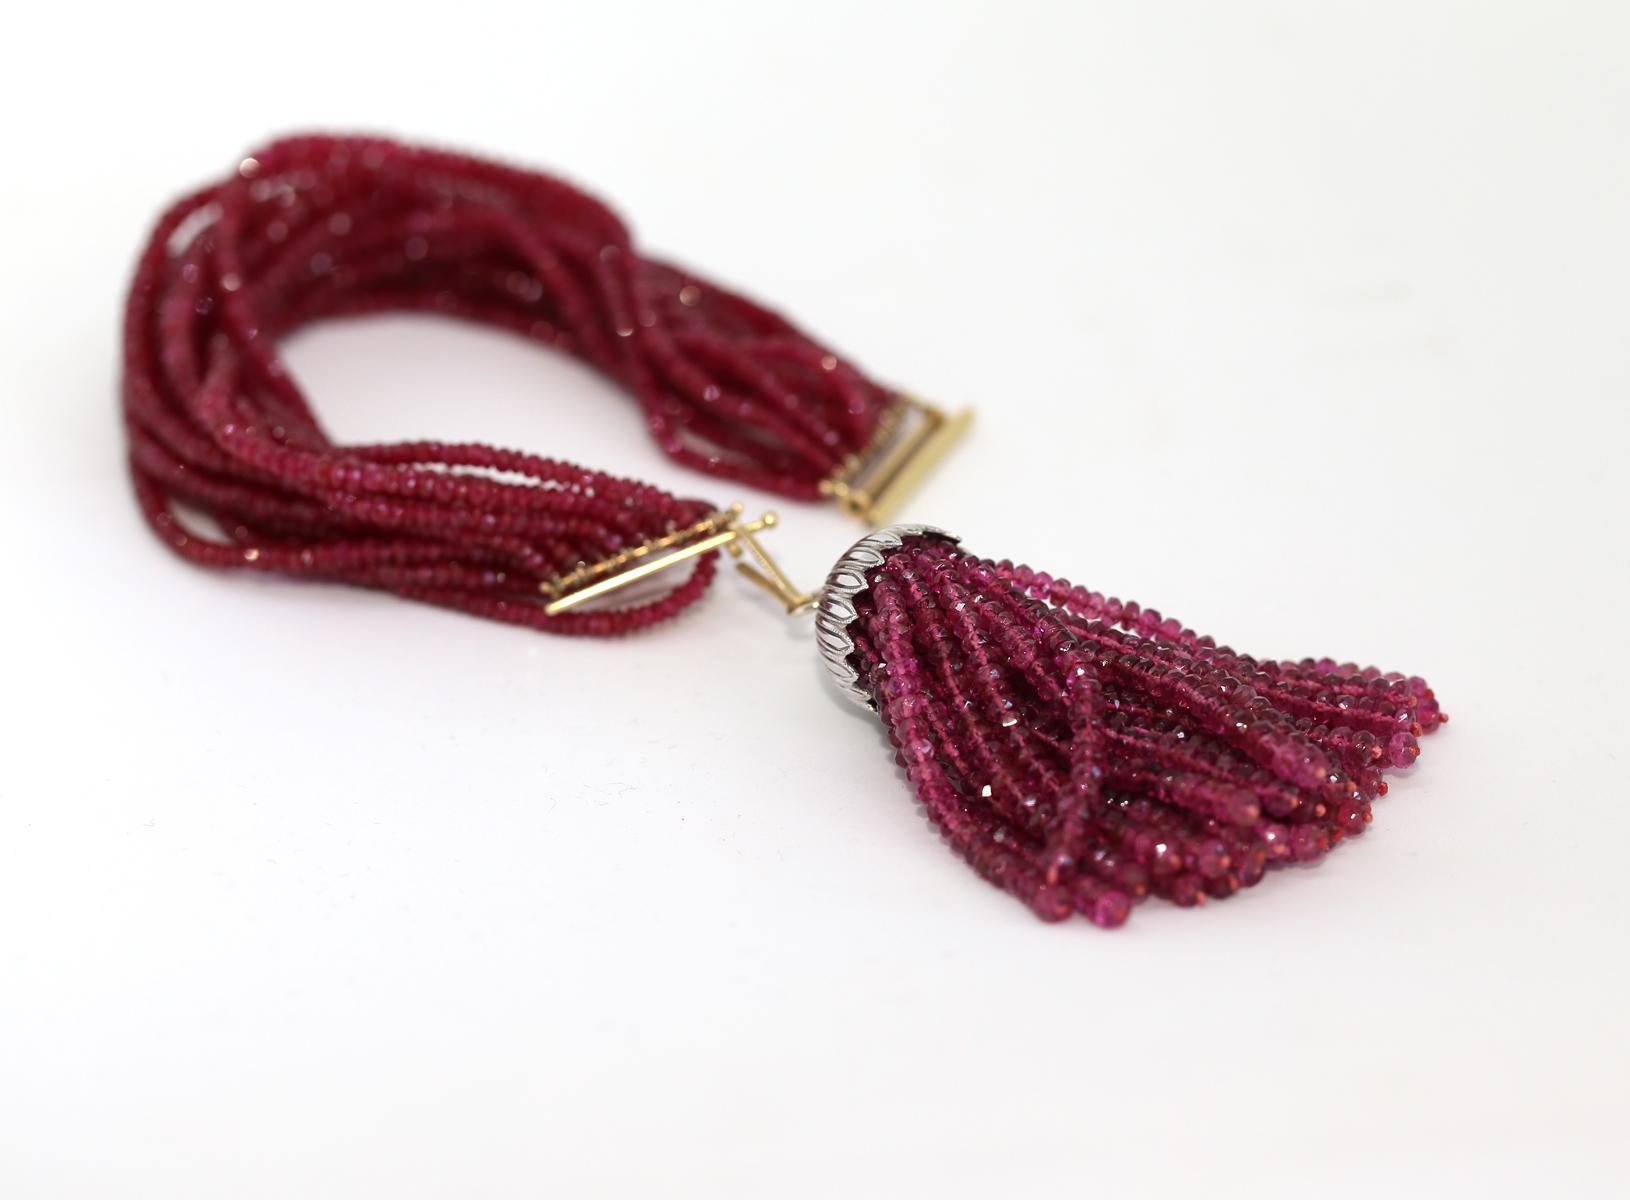 Bracelet de perles de rubis avec fermoir en or et pendentif amovible de perles de rubis supplémentaires avec un dôme en platine. 

Pendentif Rubis Perles Or Platine. Créée vers 1920. Pendentif en platine avec des perles de rubis. 
Le pendentif se